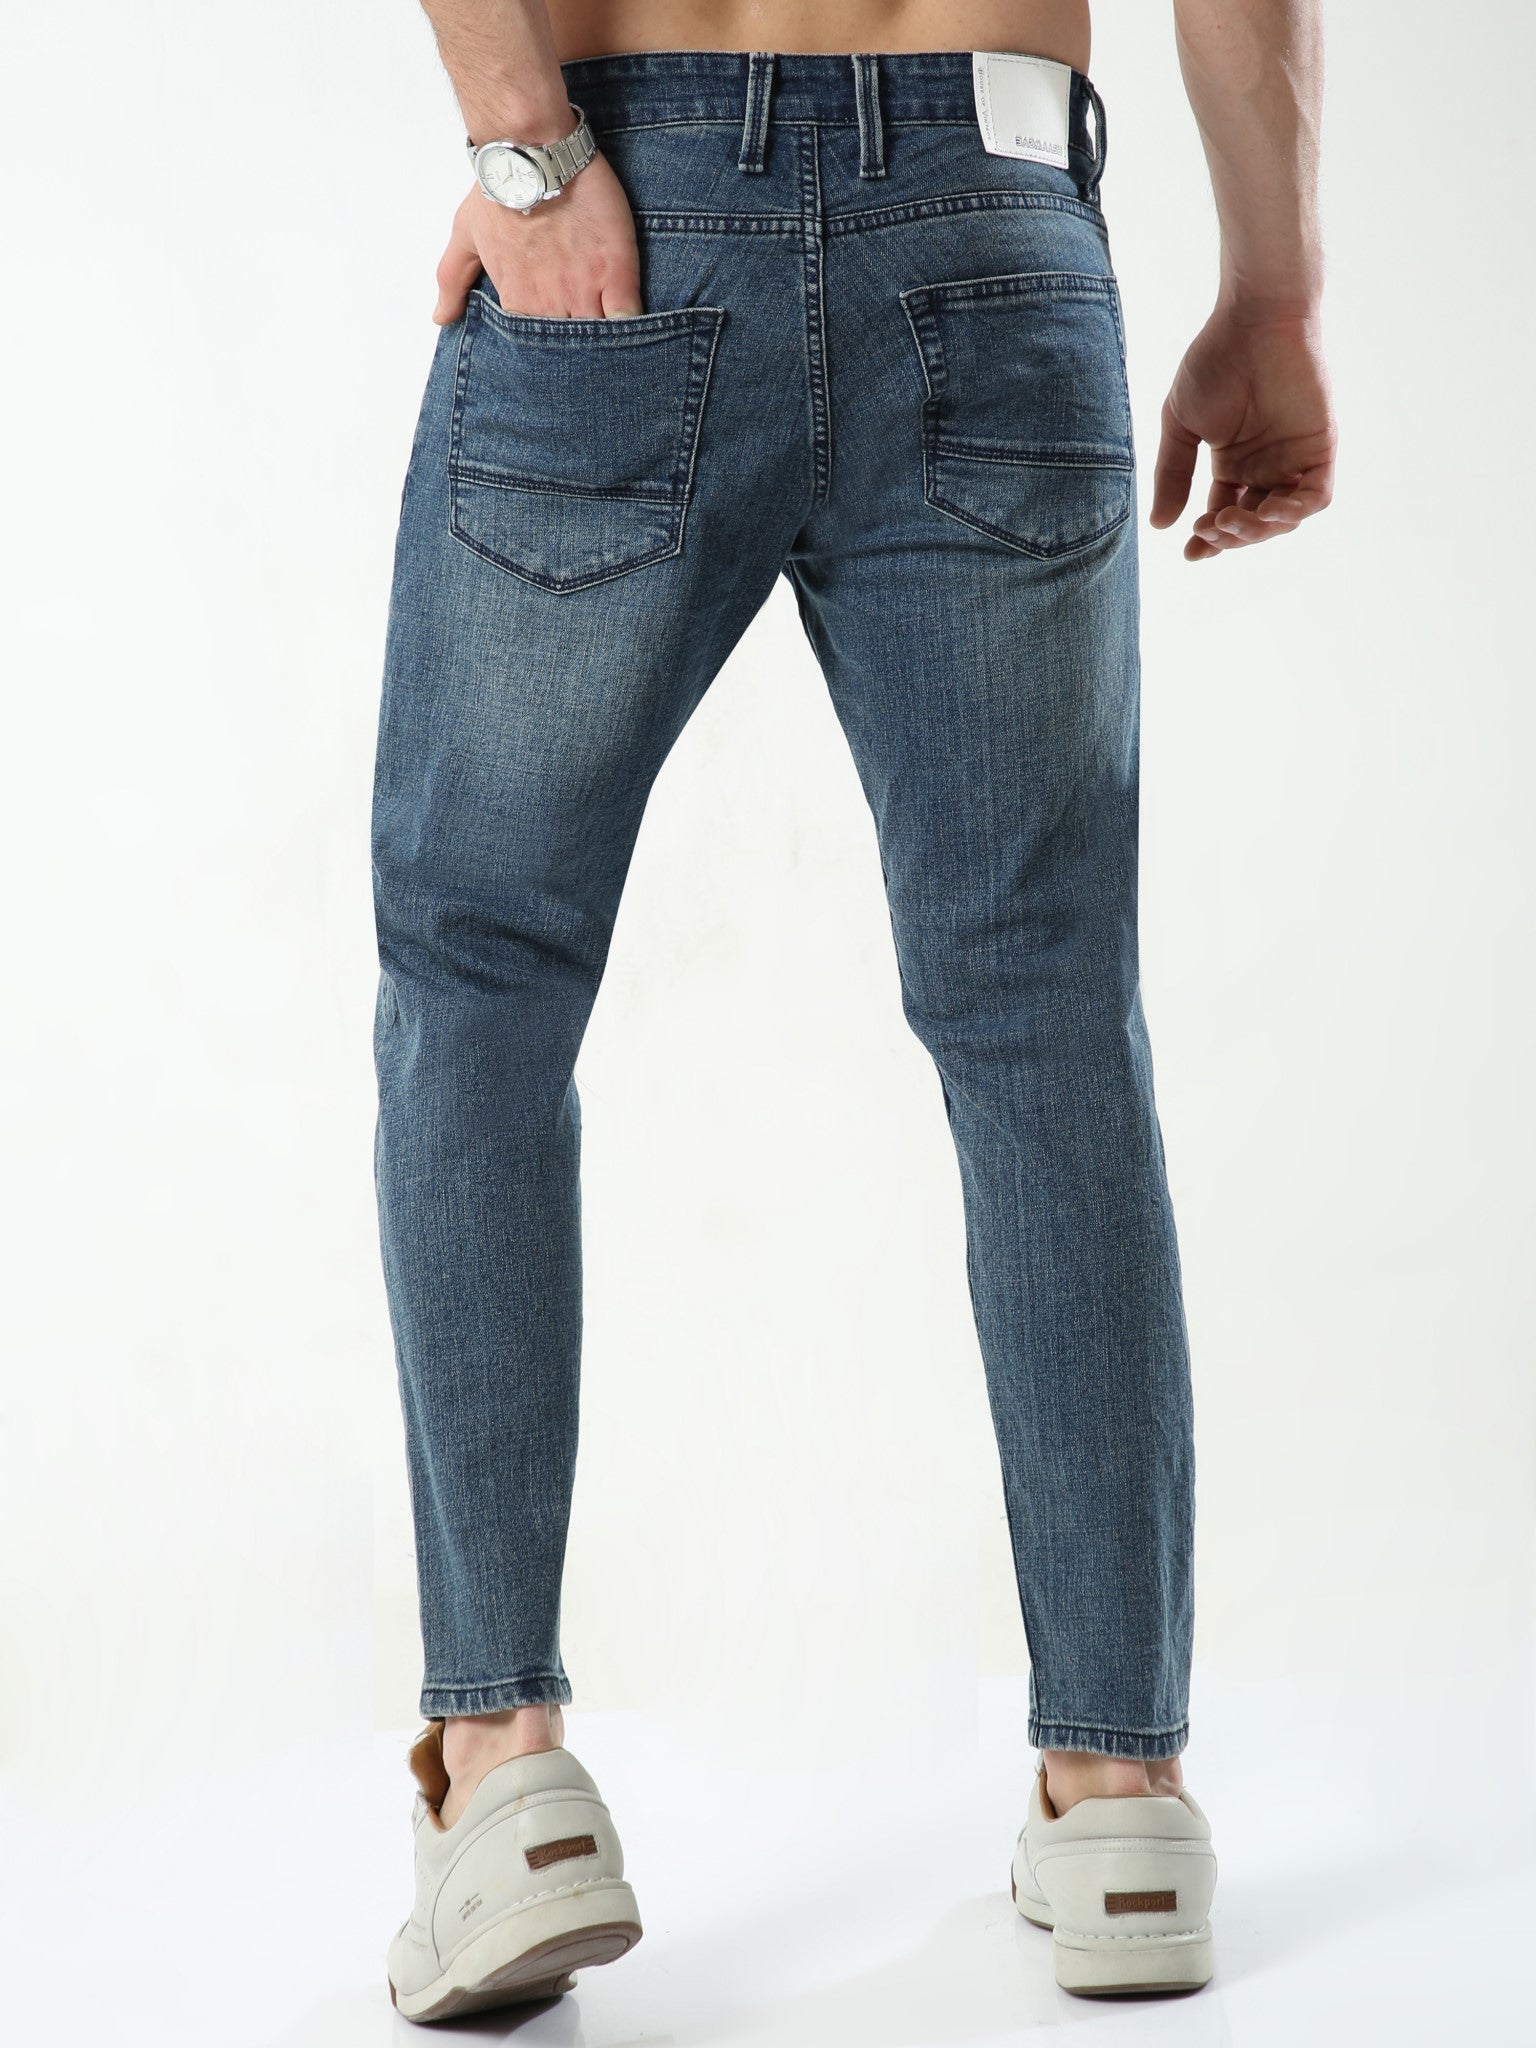 Capri Blue Skinny Jeans